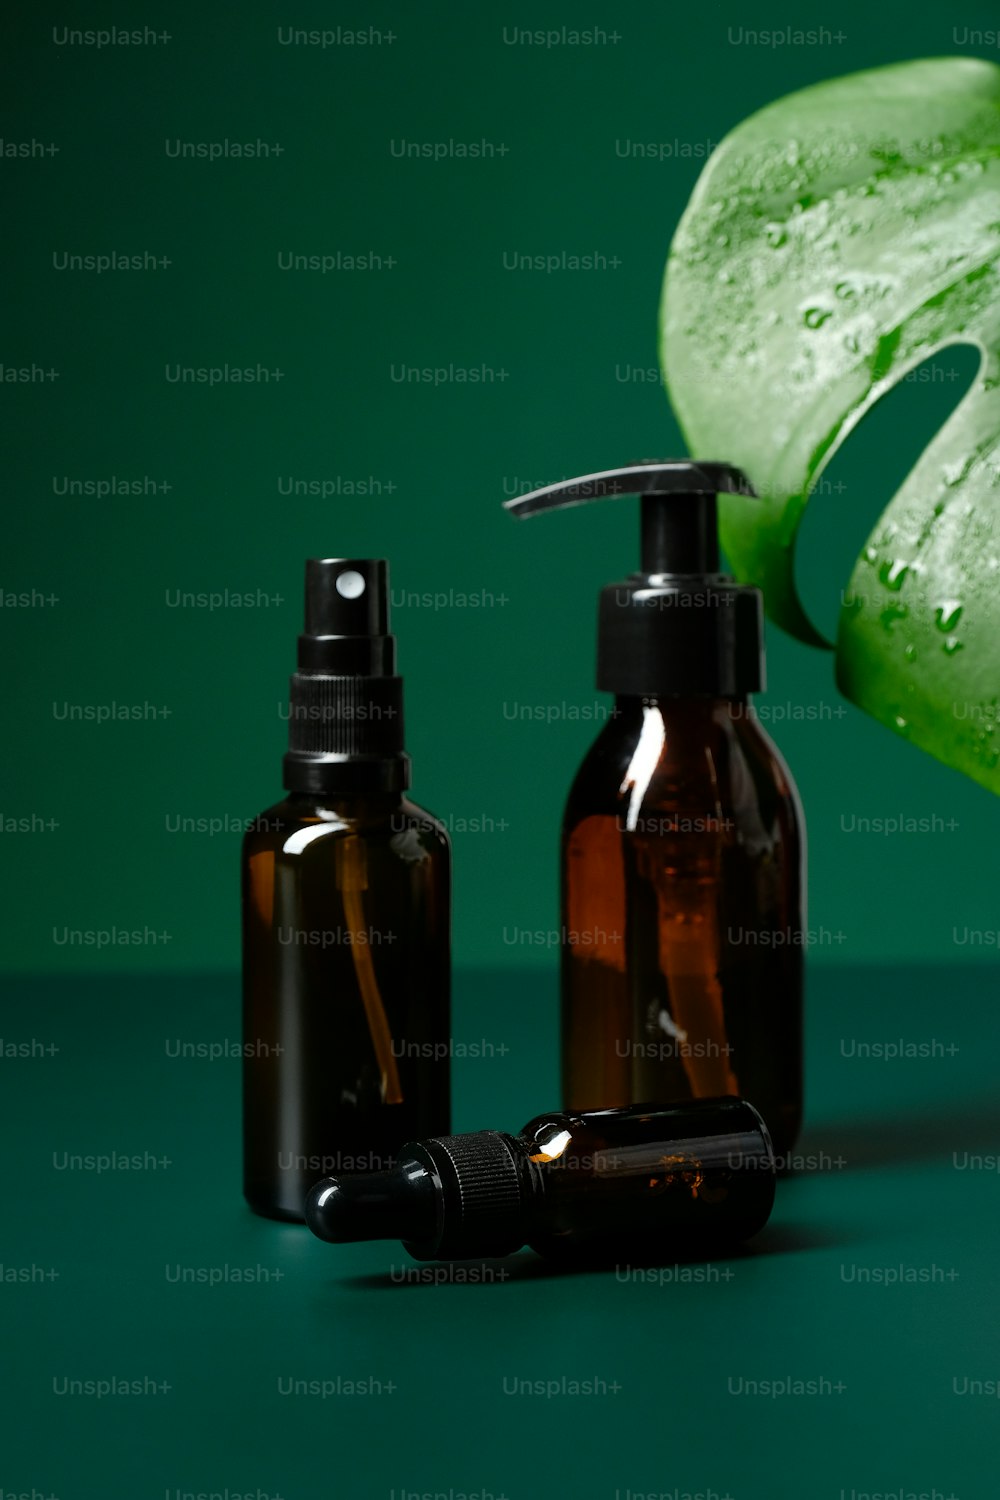 Conjunto de botellas cosméticas de vidrio ámbar y hoja de monstera sobre fondo verde. Envases de productos de belleza ecológicos naturales sin etiquetas.